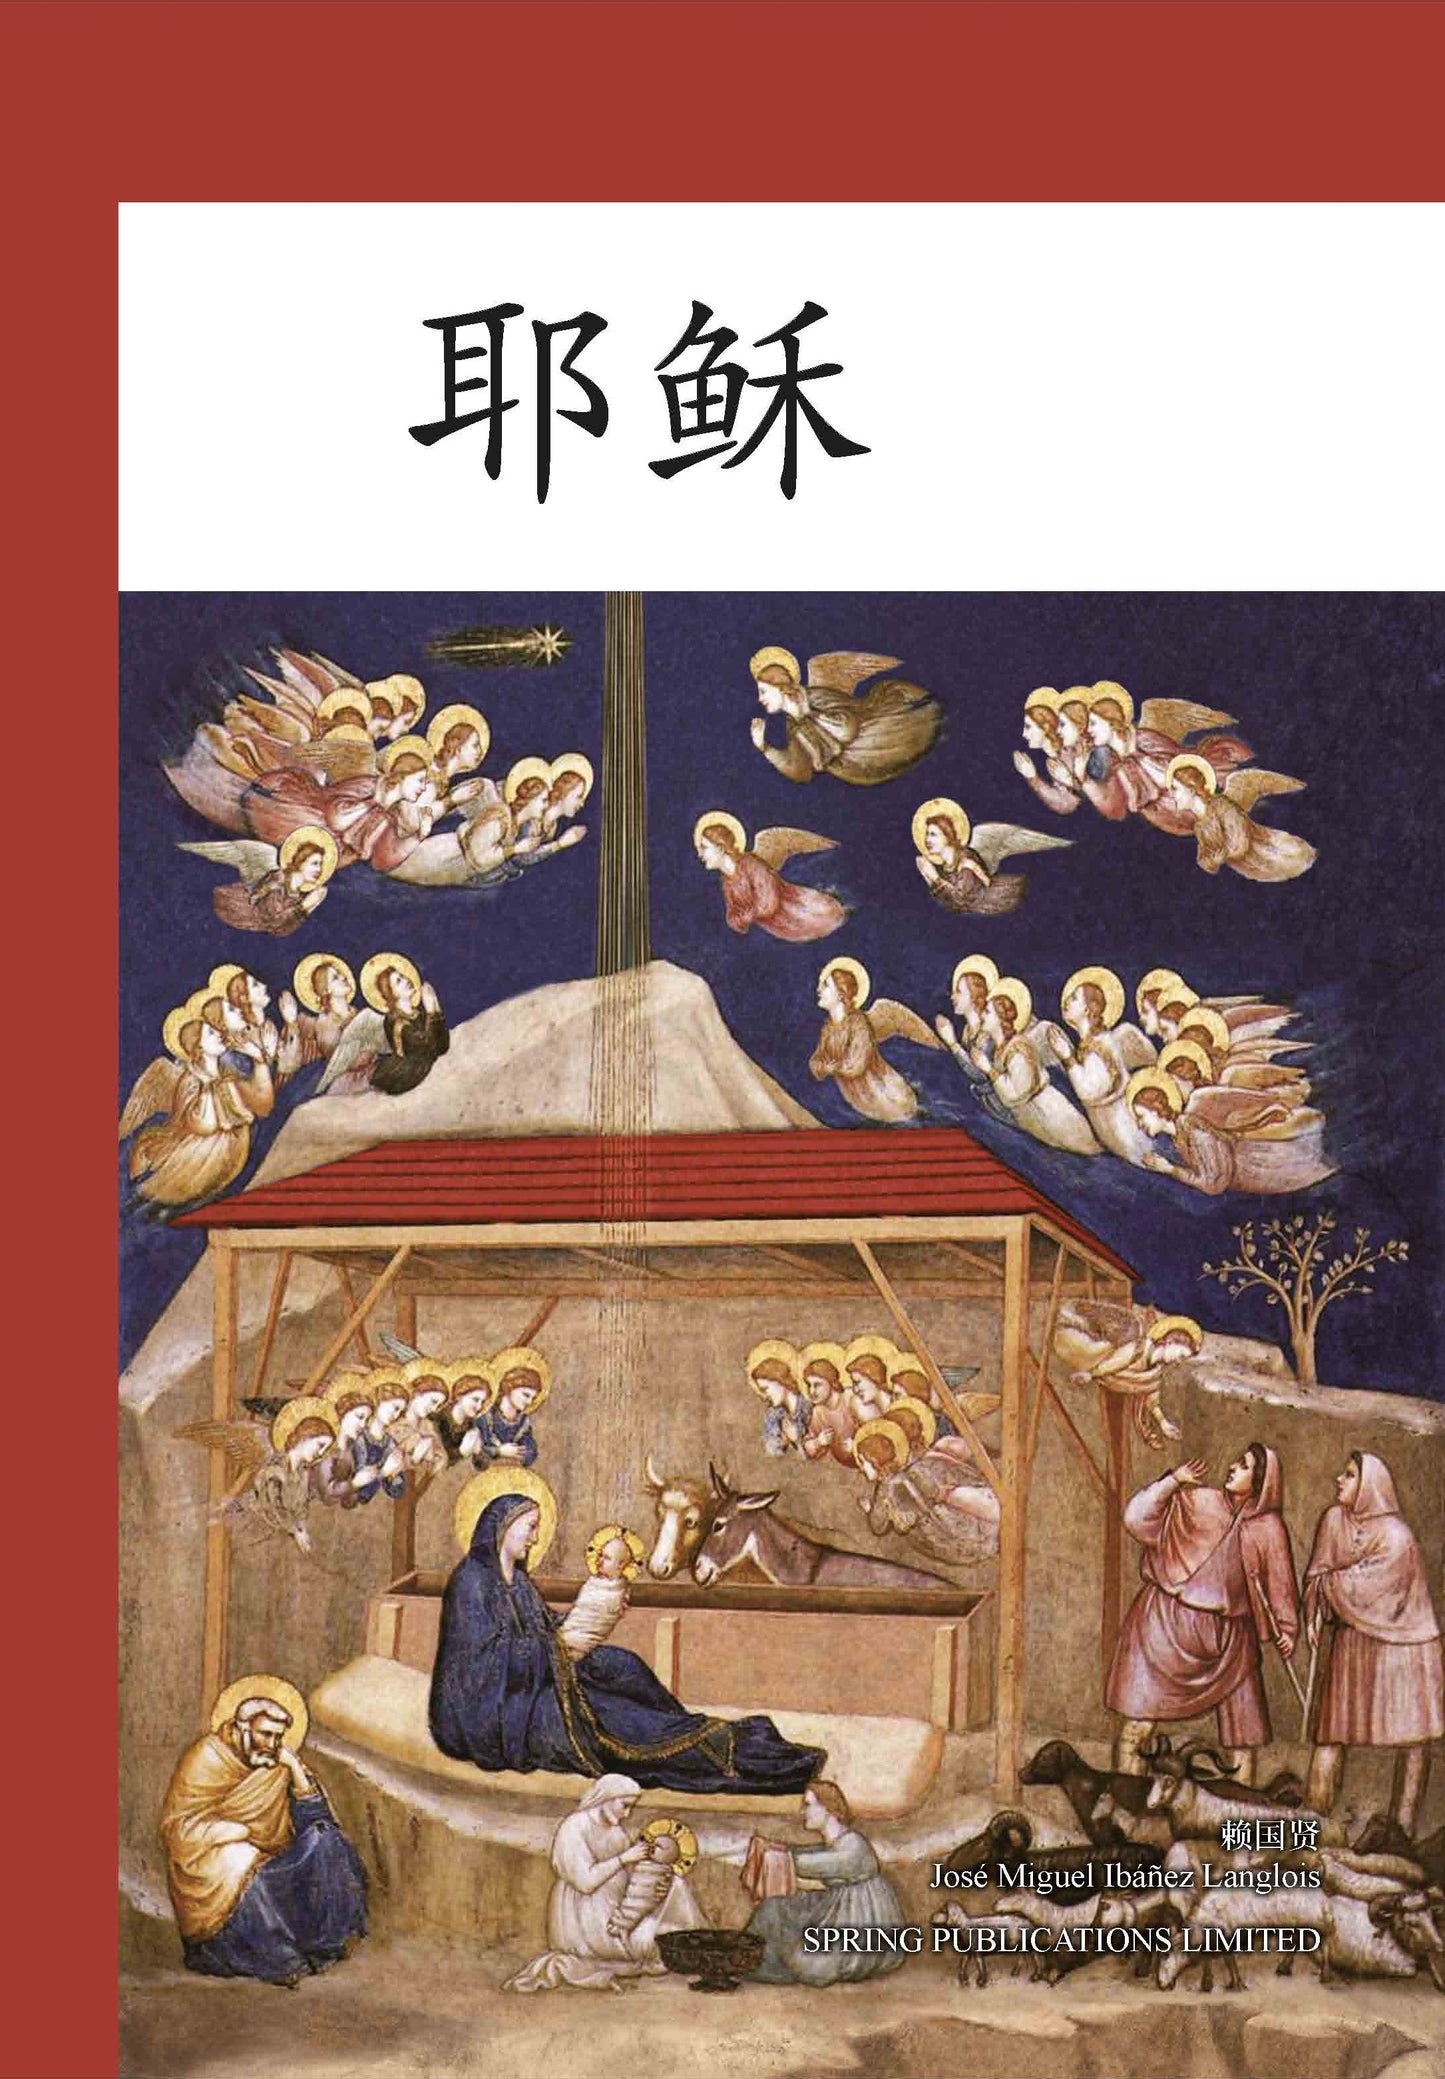 02-001 耶穌 Jesus (Simplified Chinese)